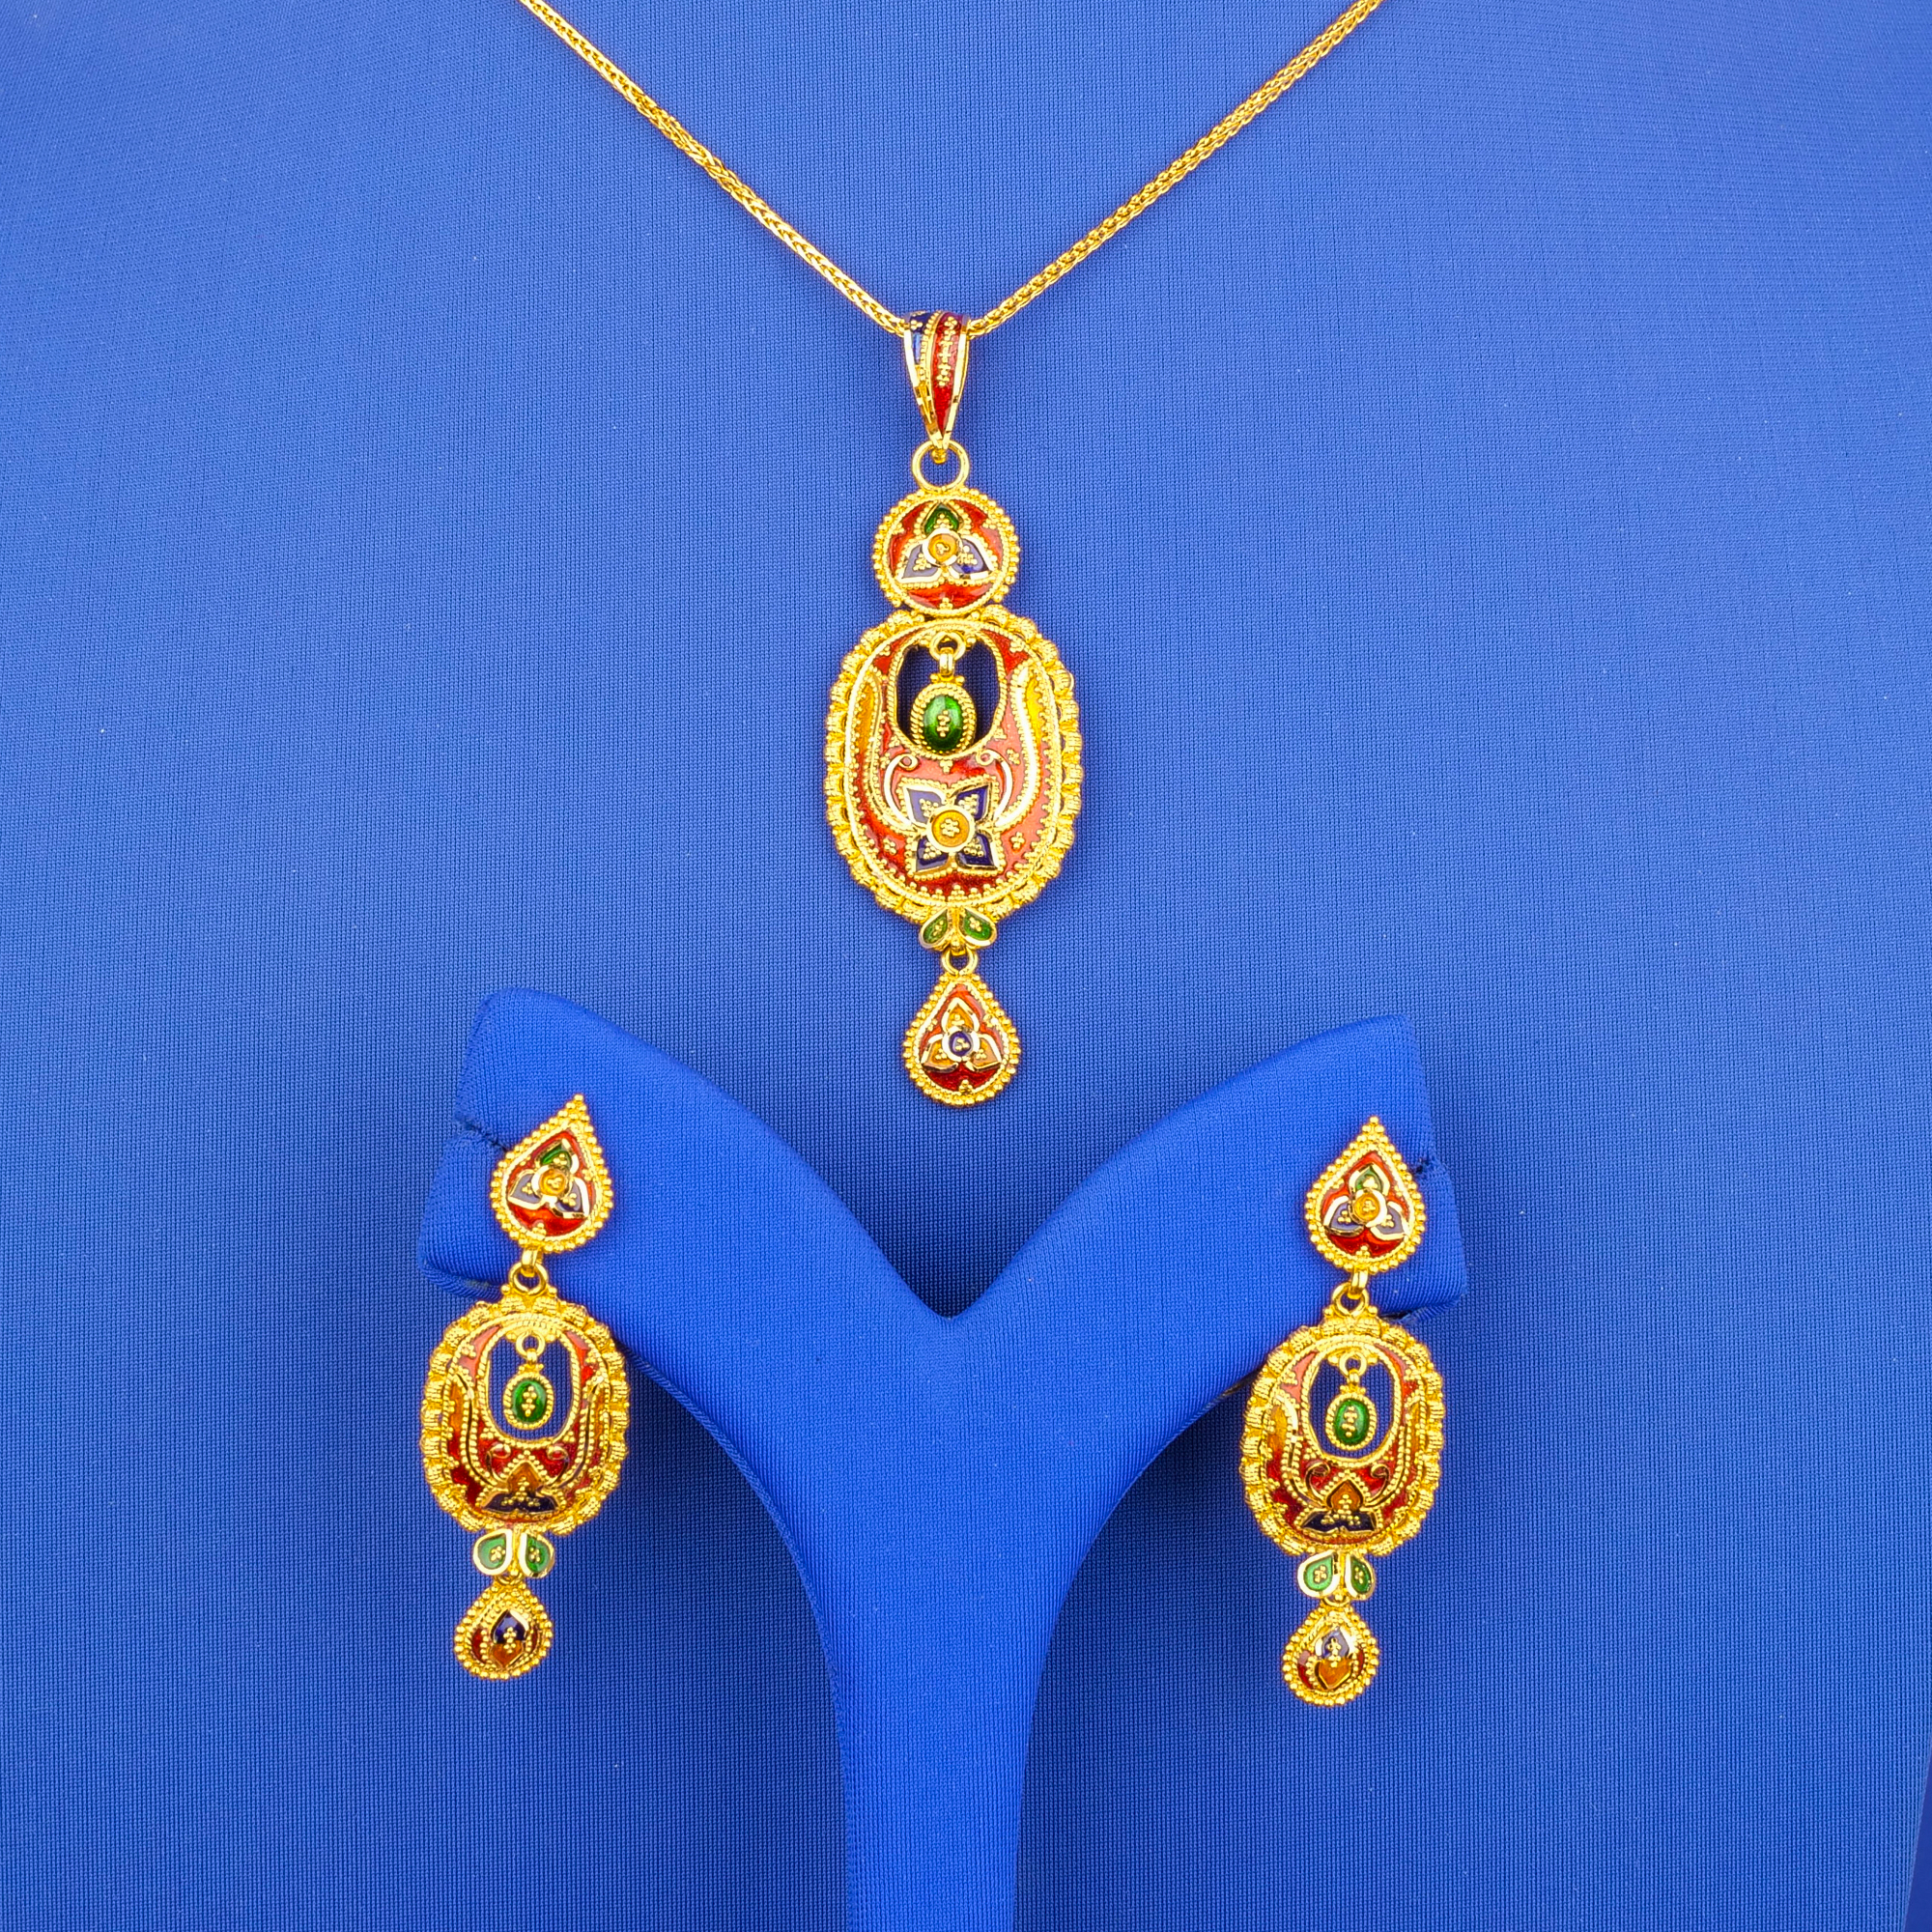 Celestial Splendor: Handmade 22K Gold Pendant and Earrings Set (chain not included)